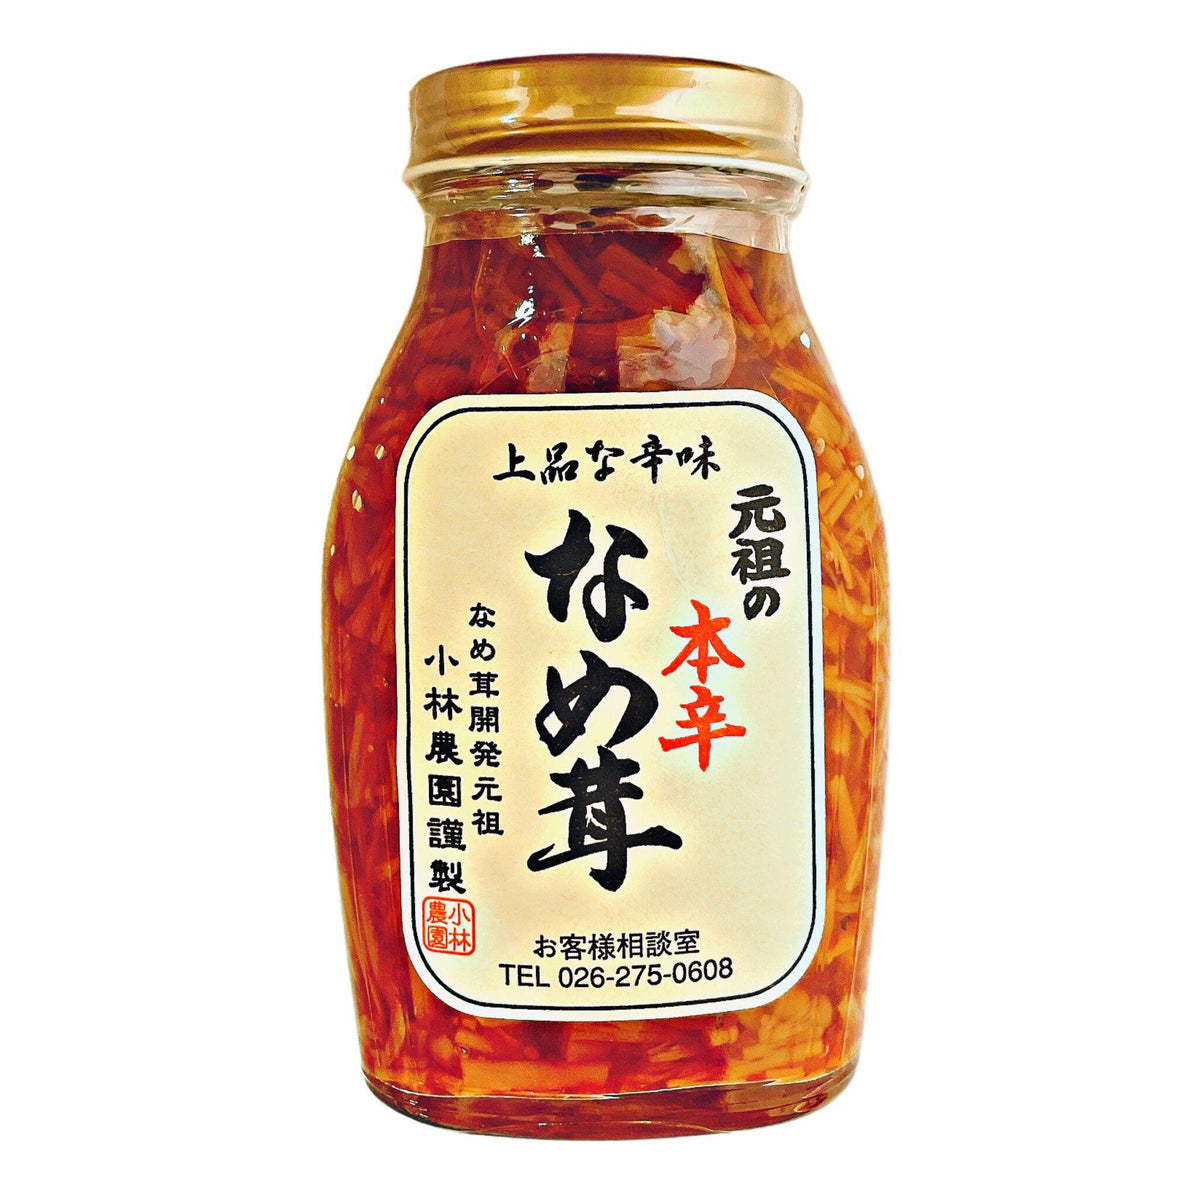 7.0oz/200g　Market　Honkara　—　Nametake　Ganso　Mushroom　GOHAN　Kobayashi　Enoki